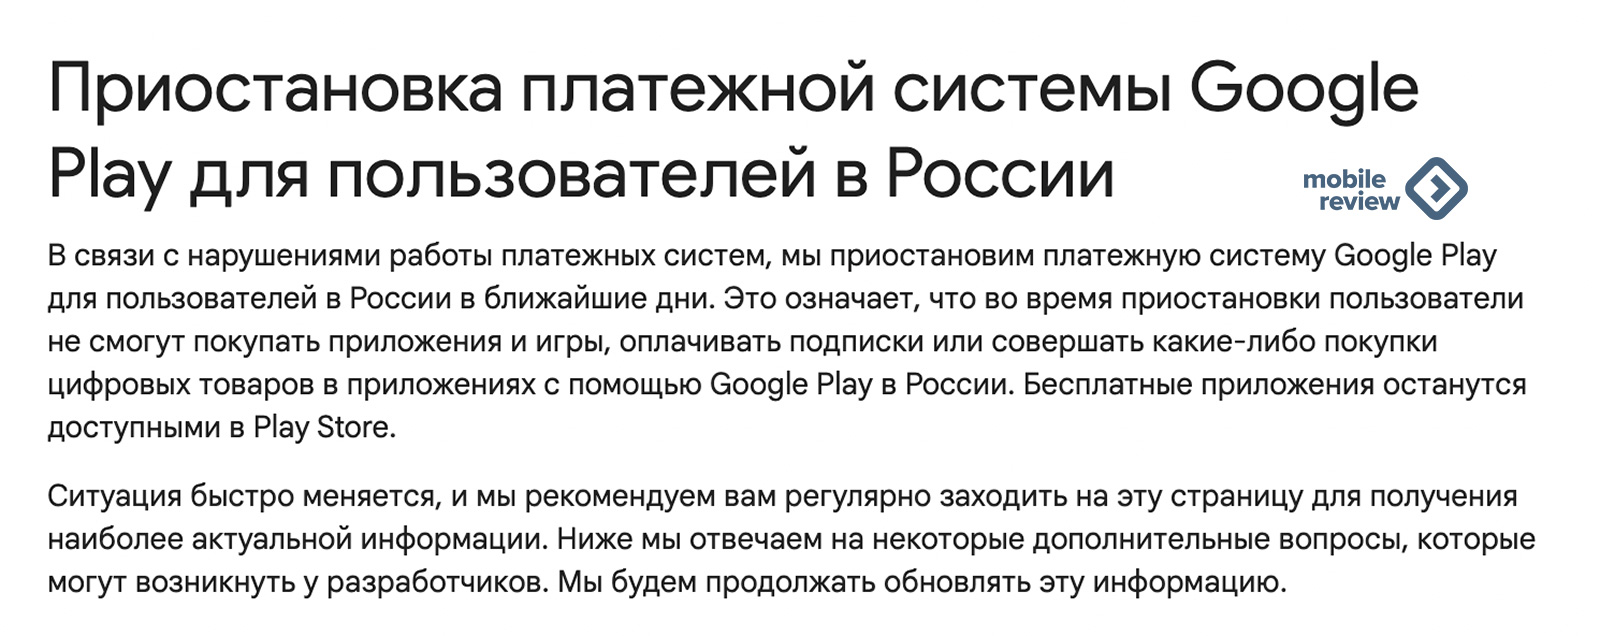 Google планирует уйти из России. Постепенное закрытие бизнеса